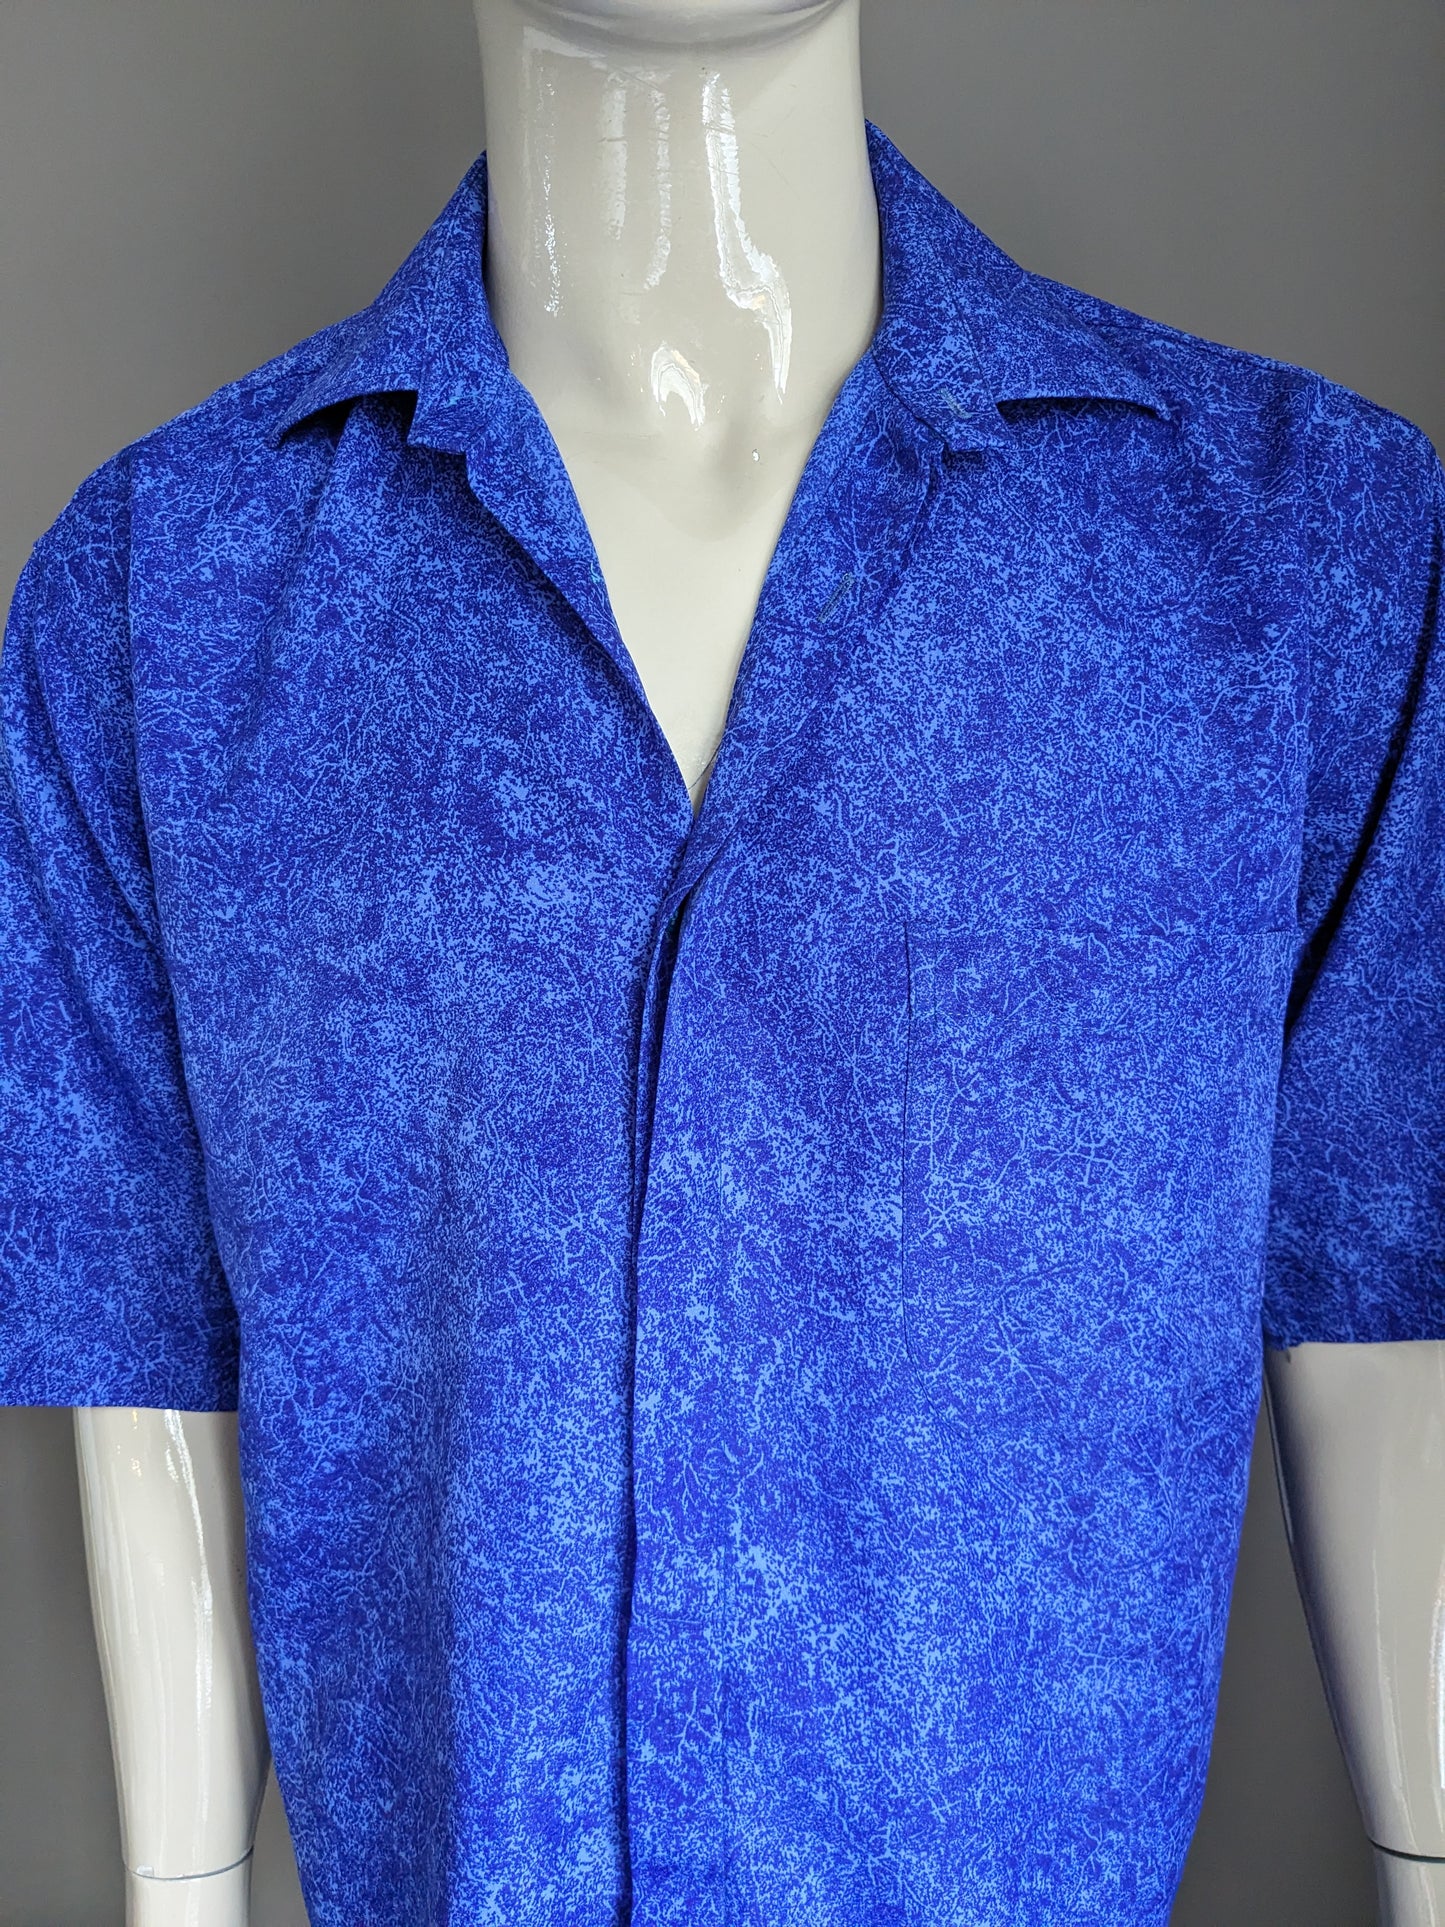 Vintage Paita Silk Shirt Short Sleeve. Blue mixed. Size XL.